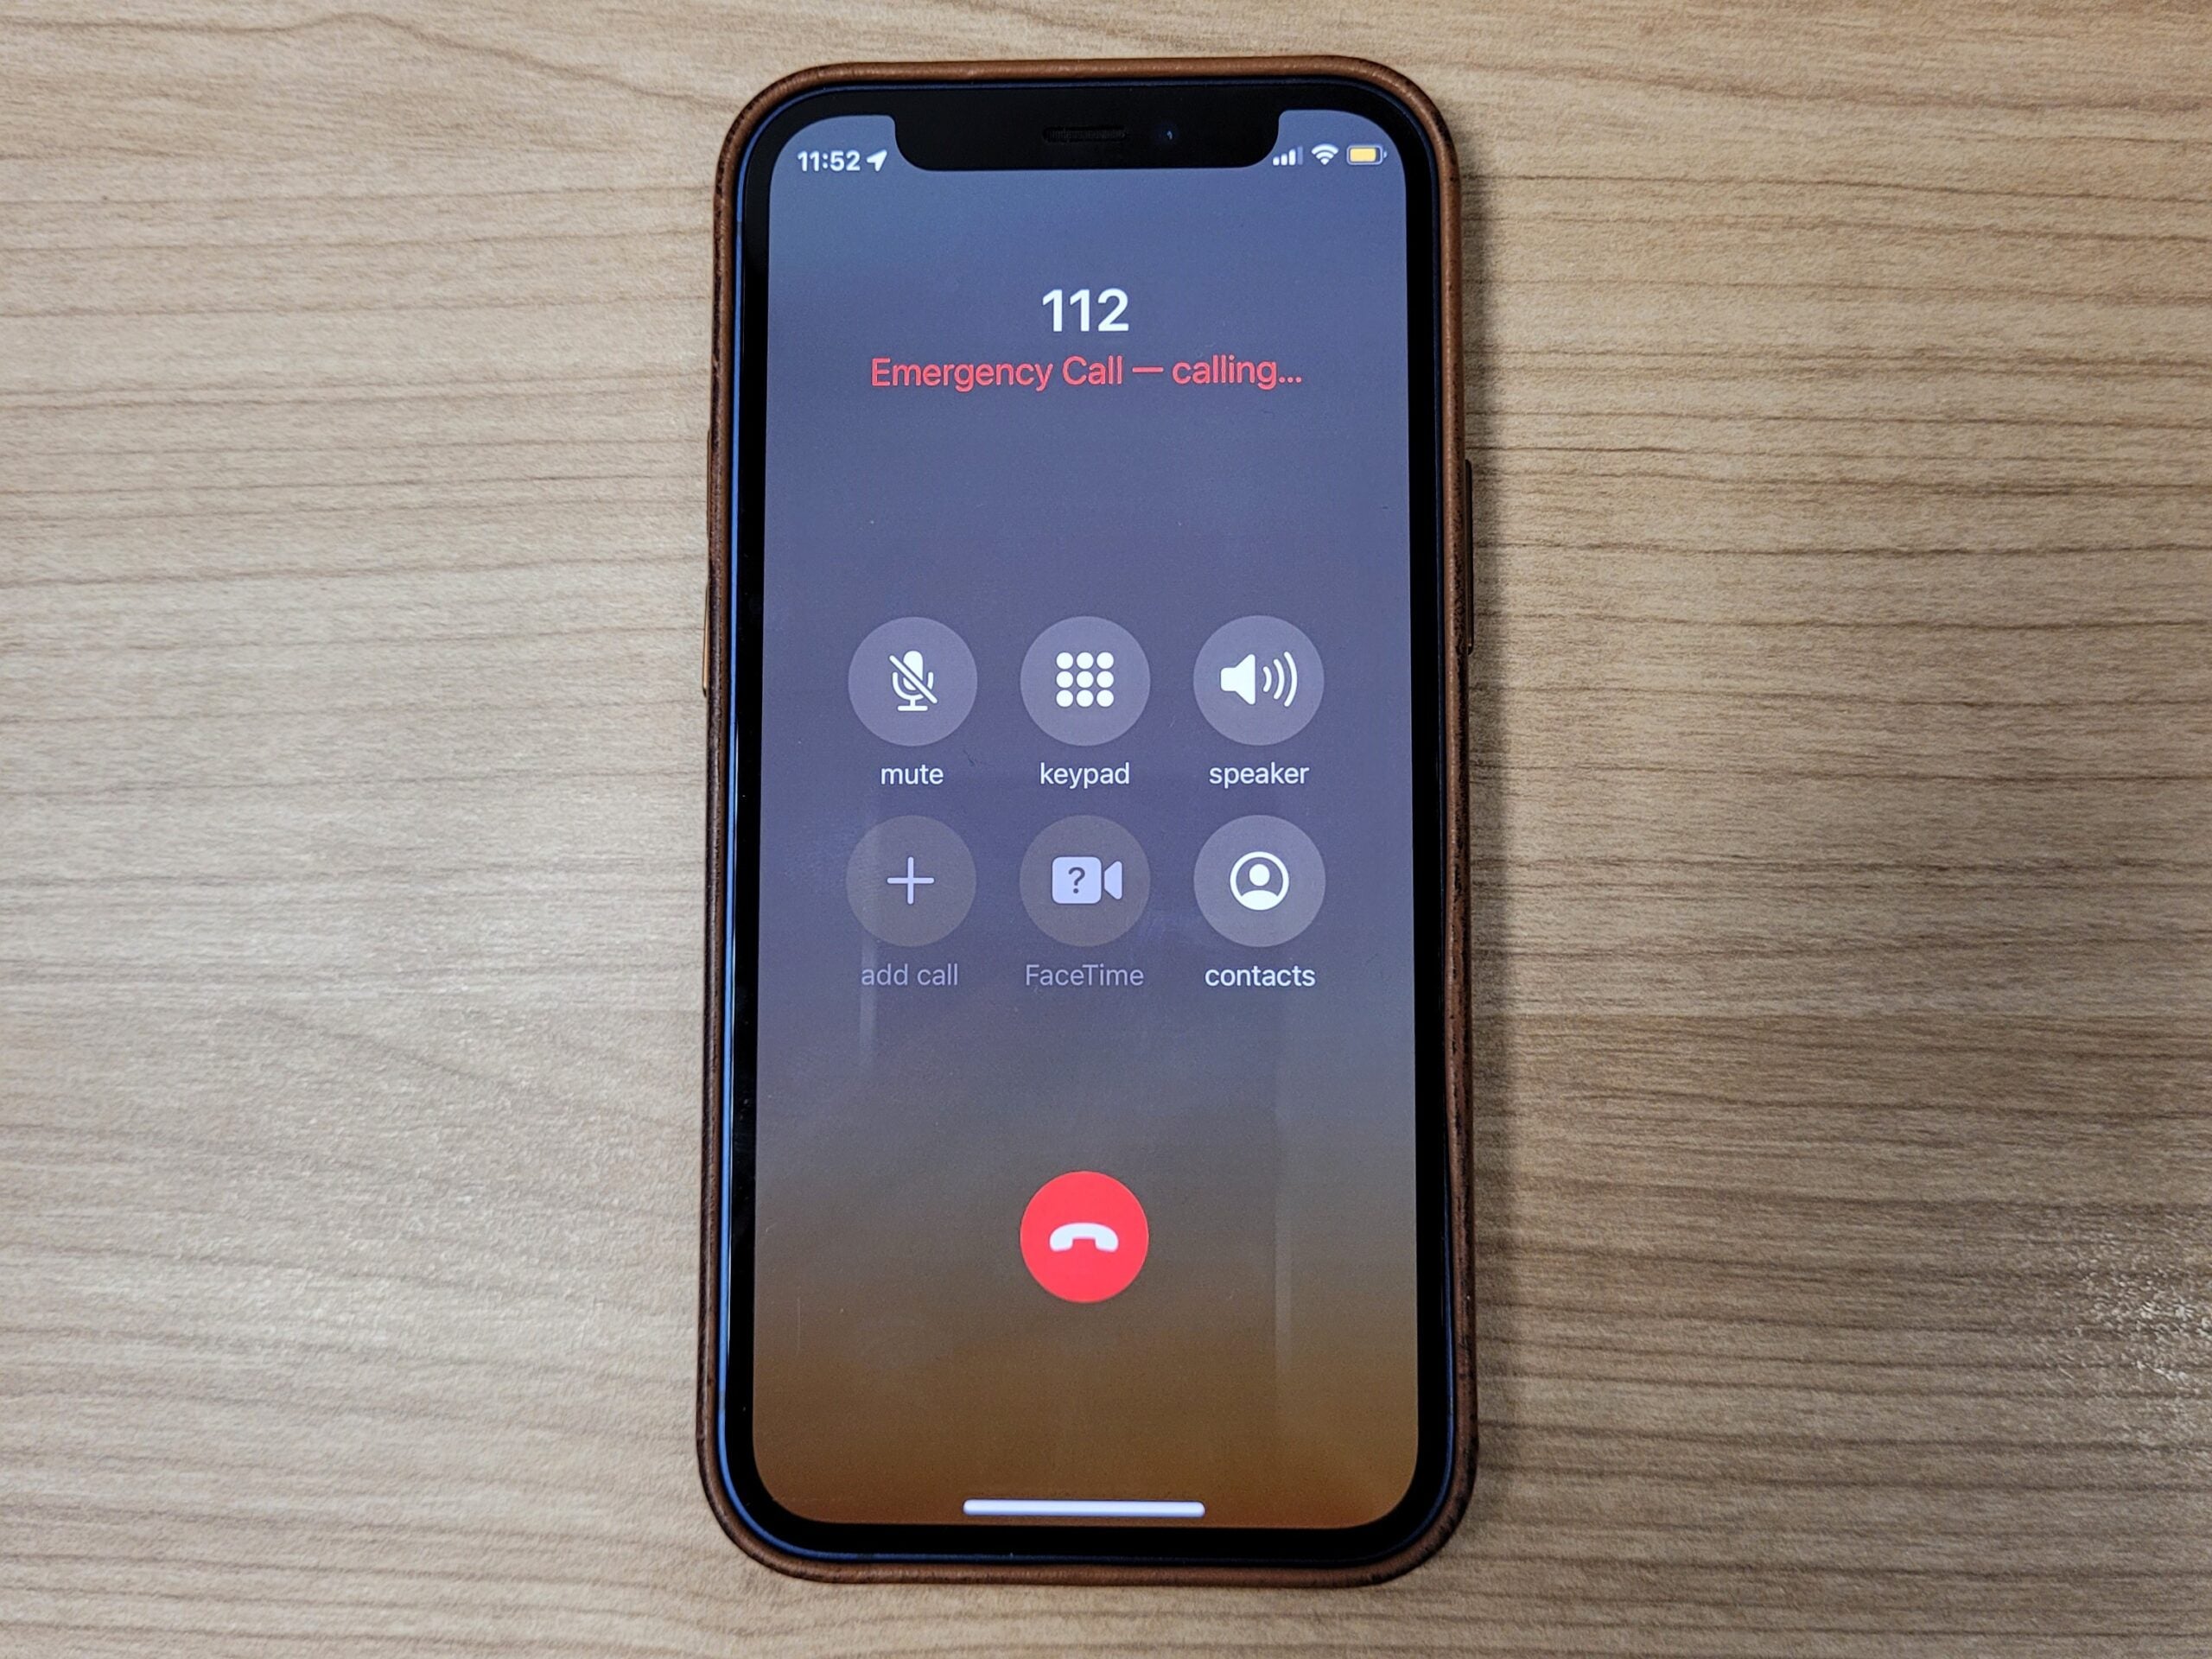 Emergency number being called via iPhone